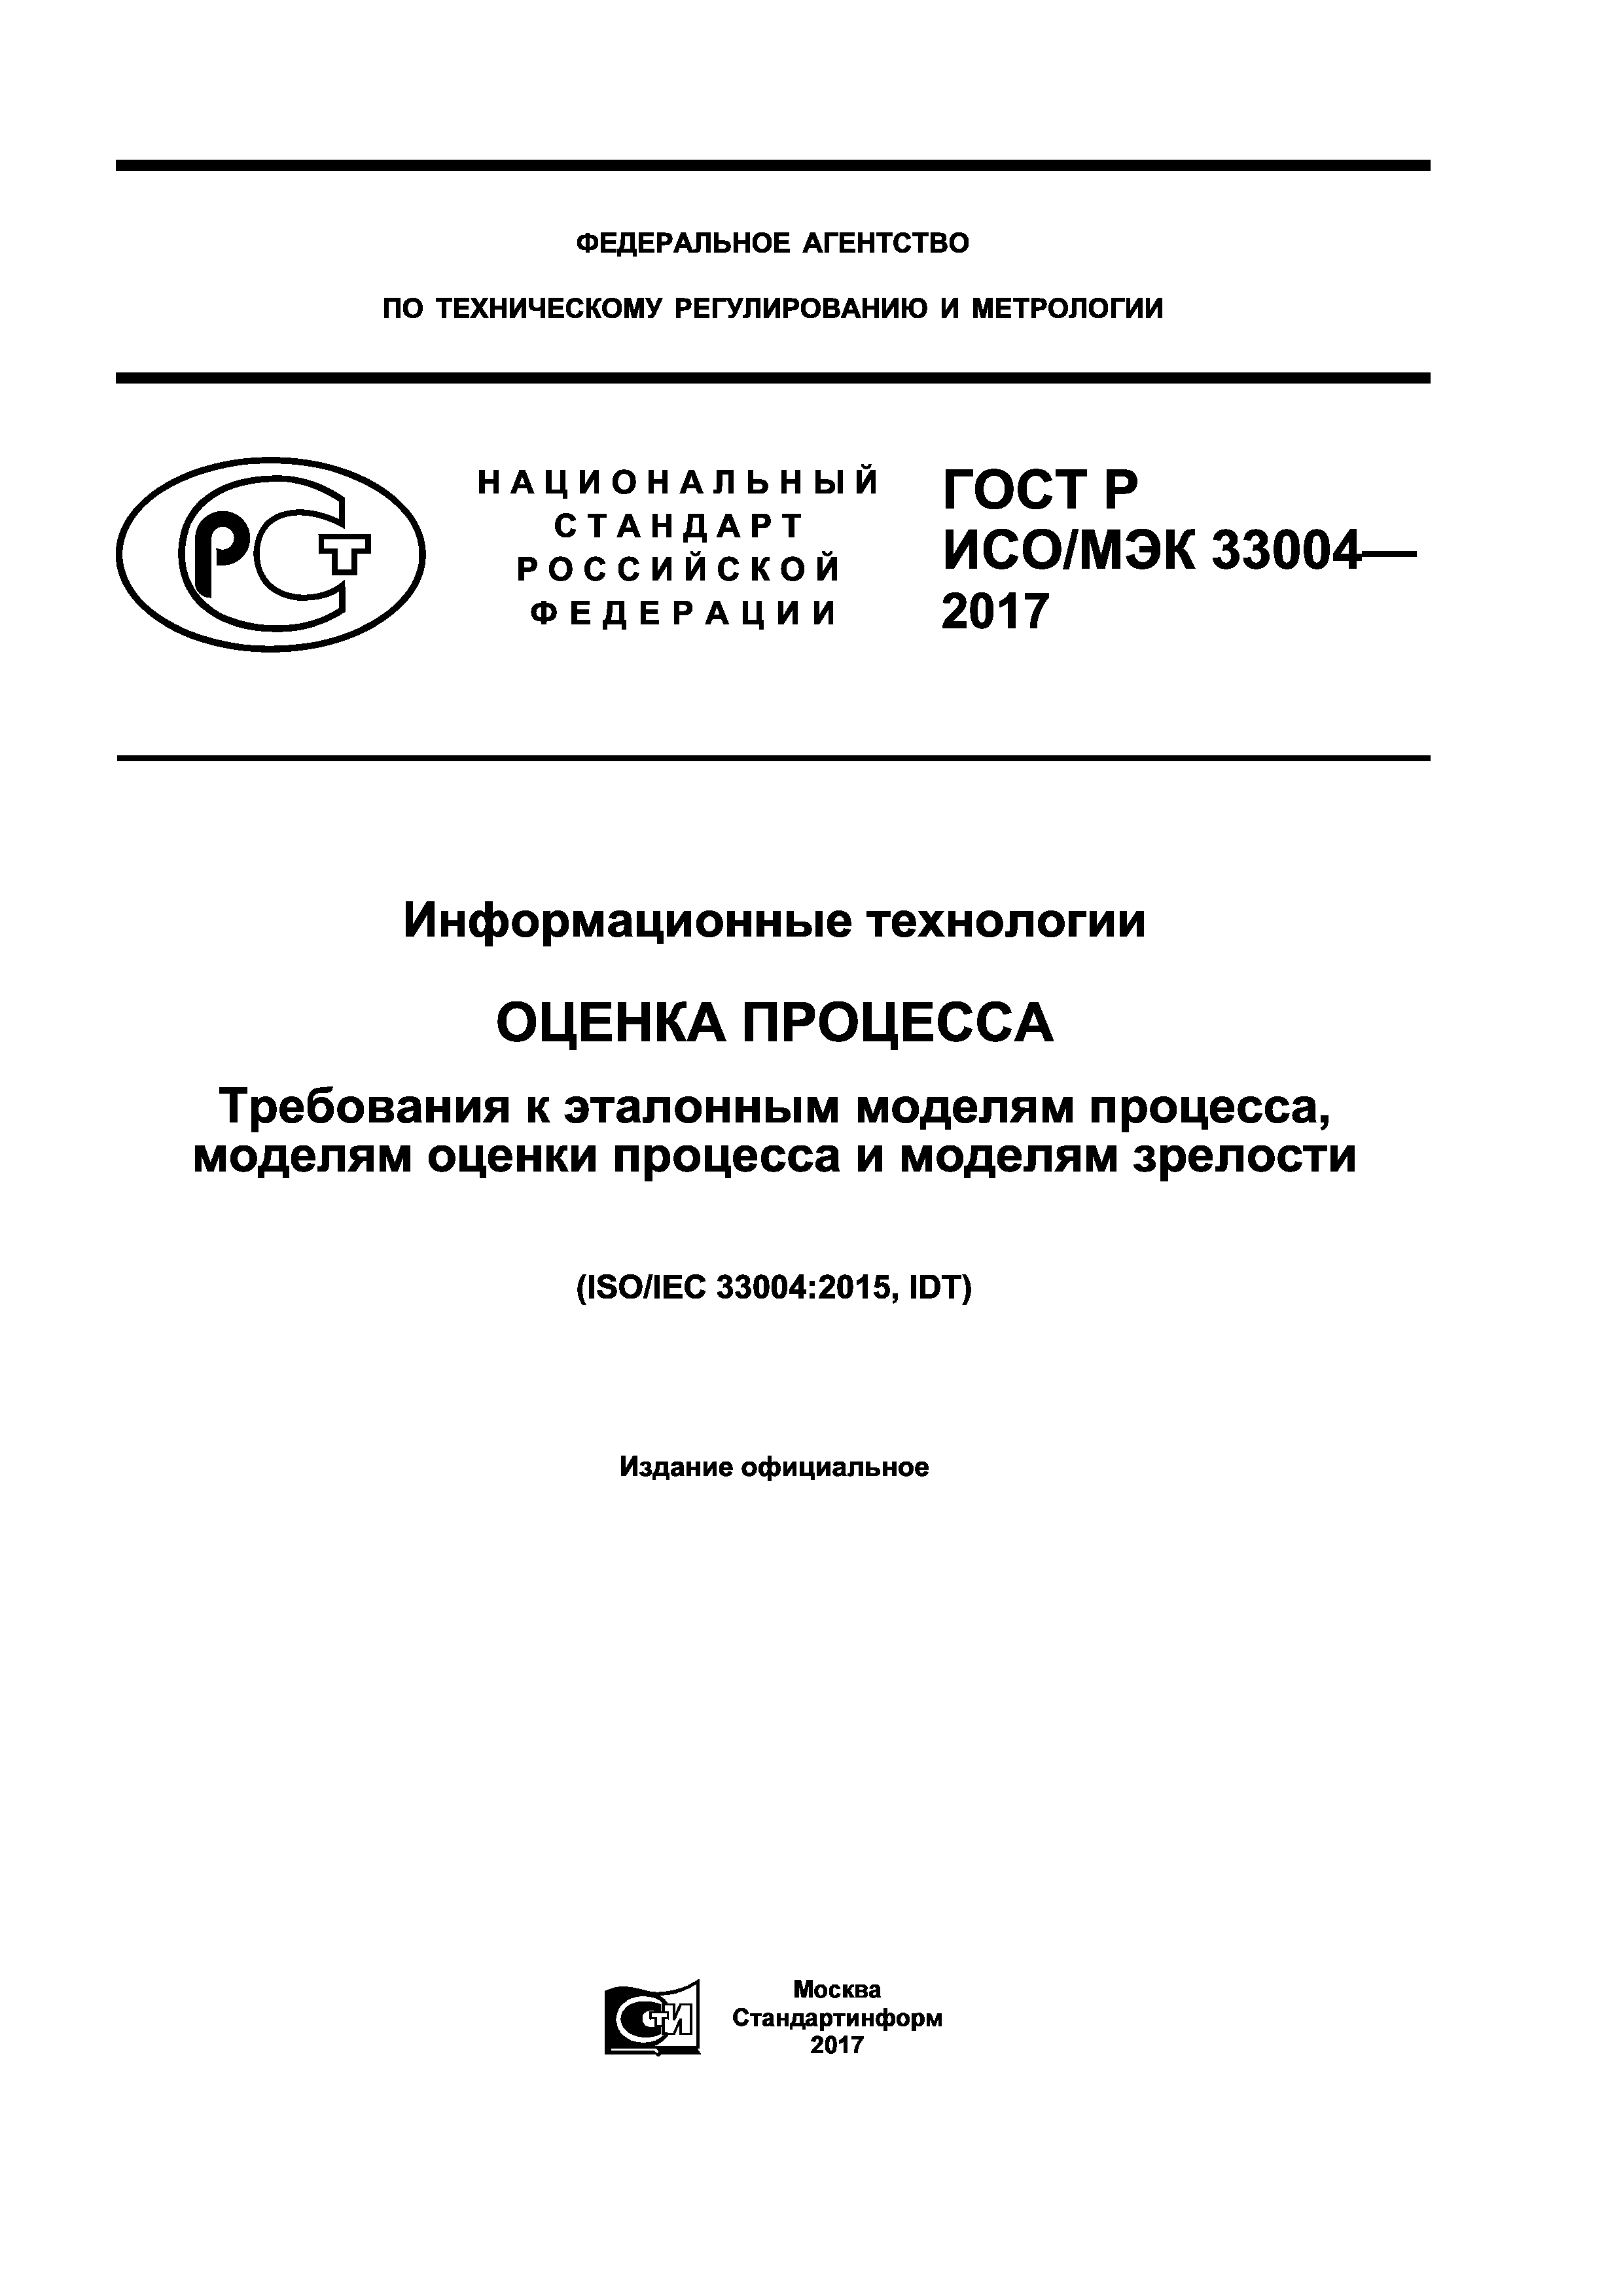 ГОСТ Р ИСО/МЭК 33004-2017